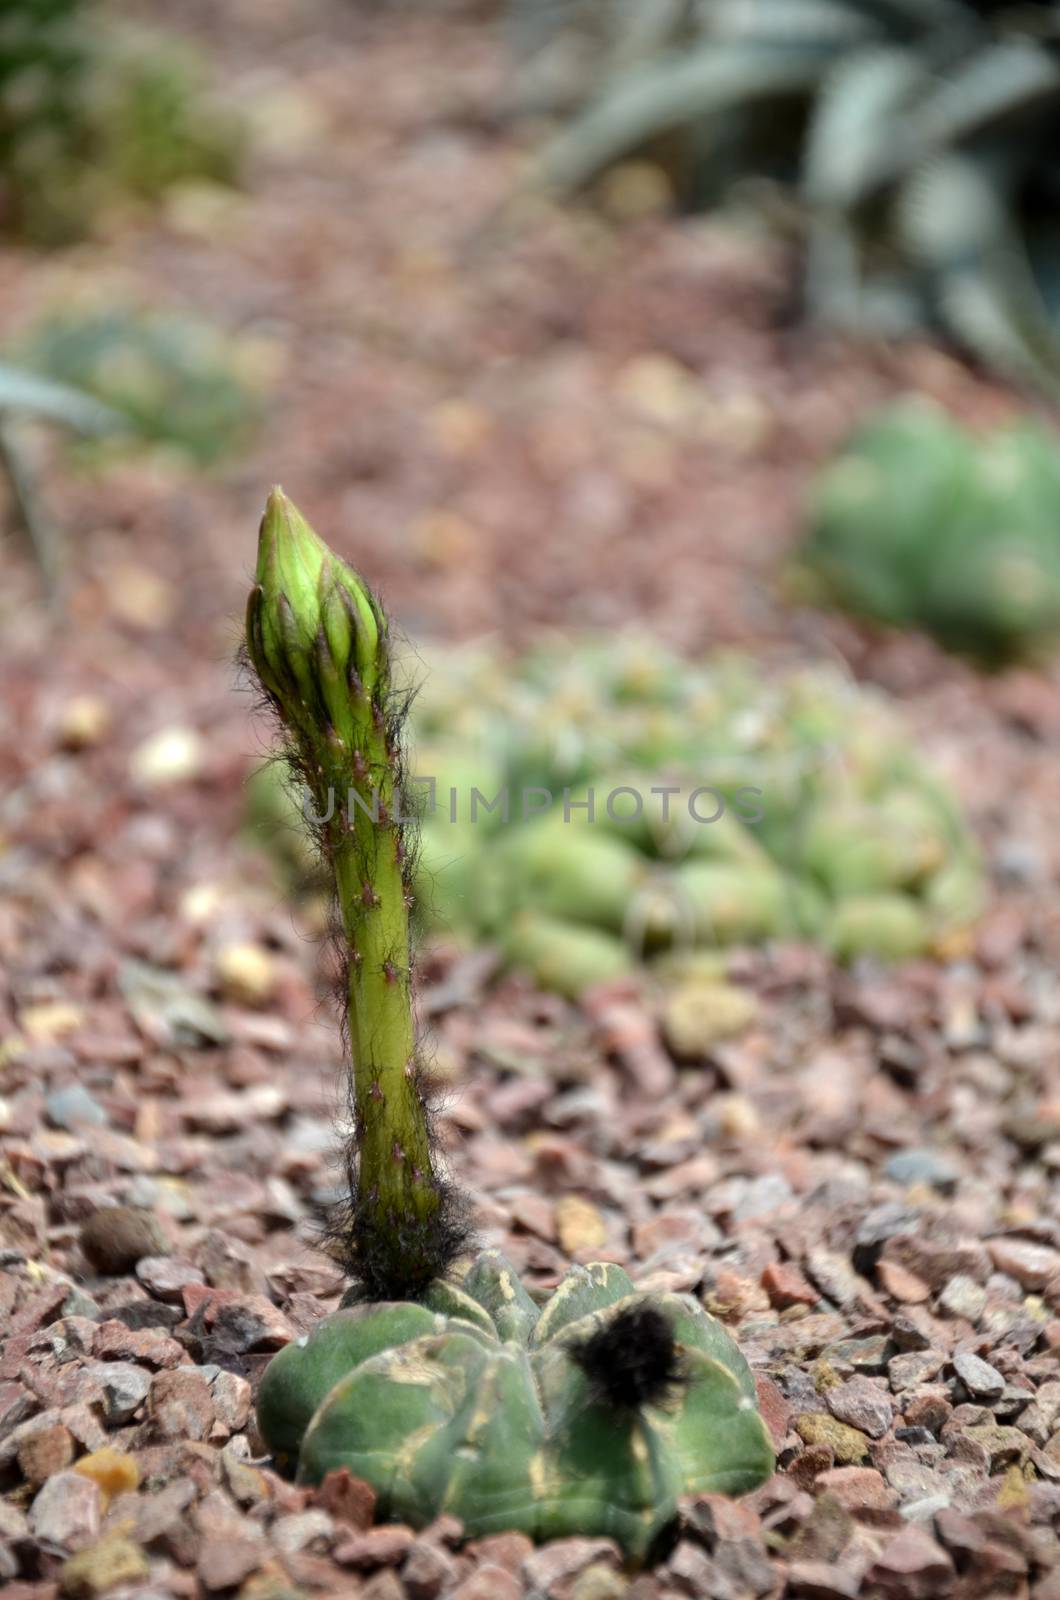 Budding Gymnocalycium cactus flower in the garden